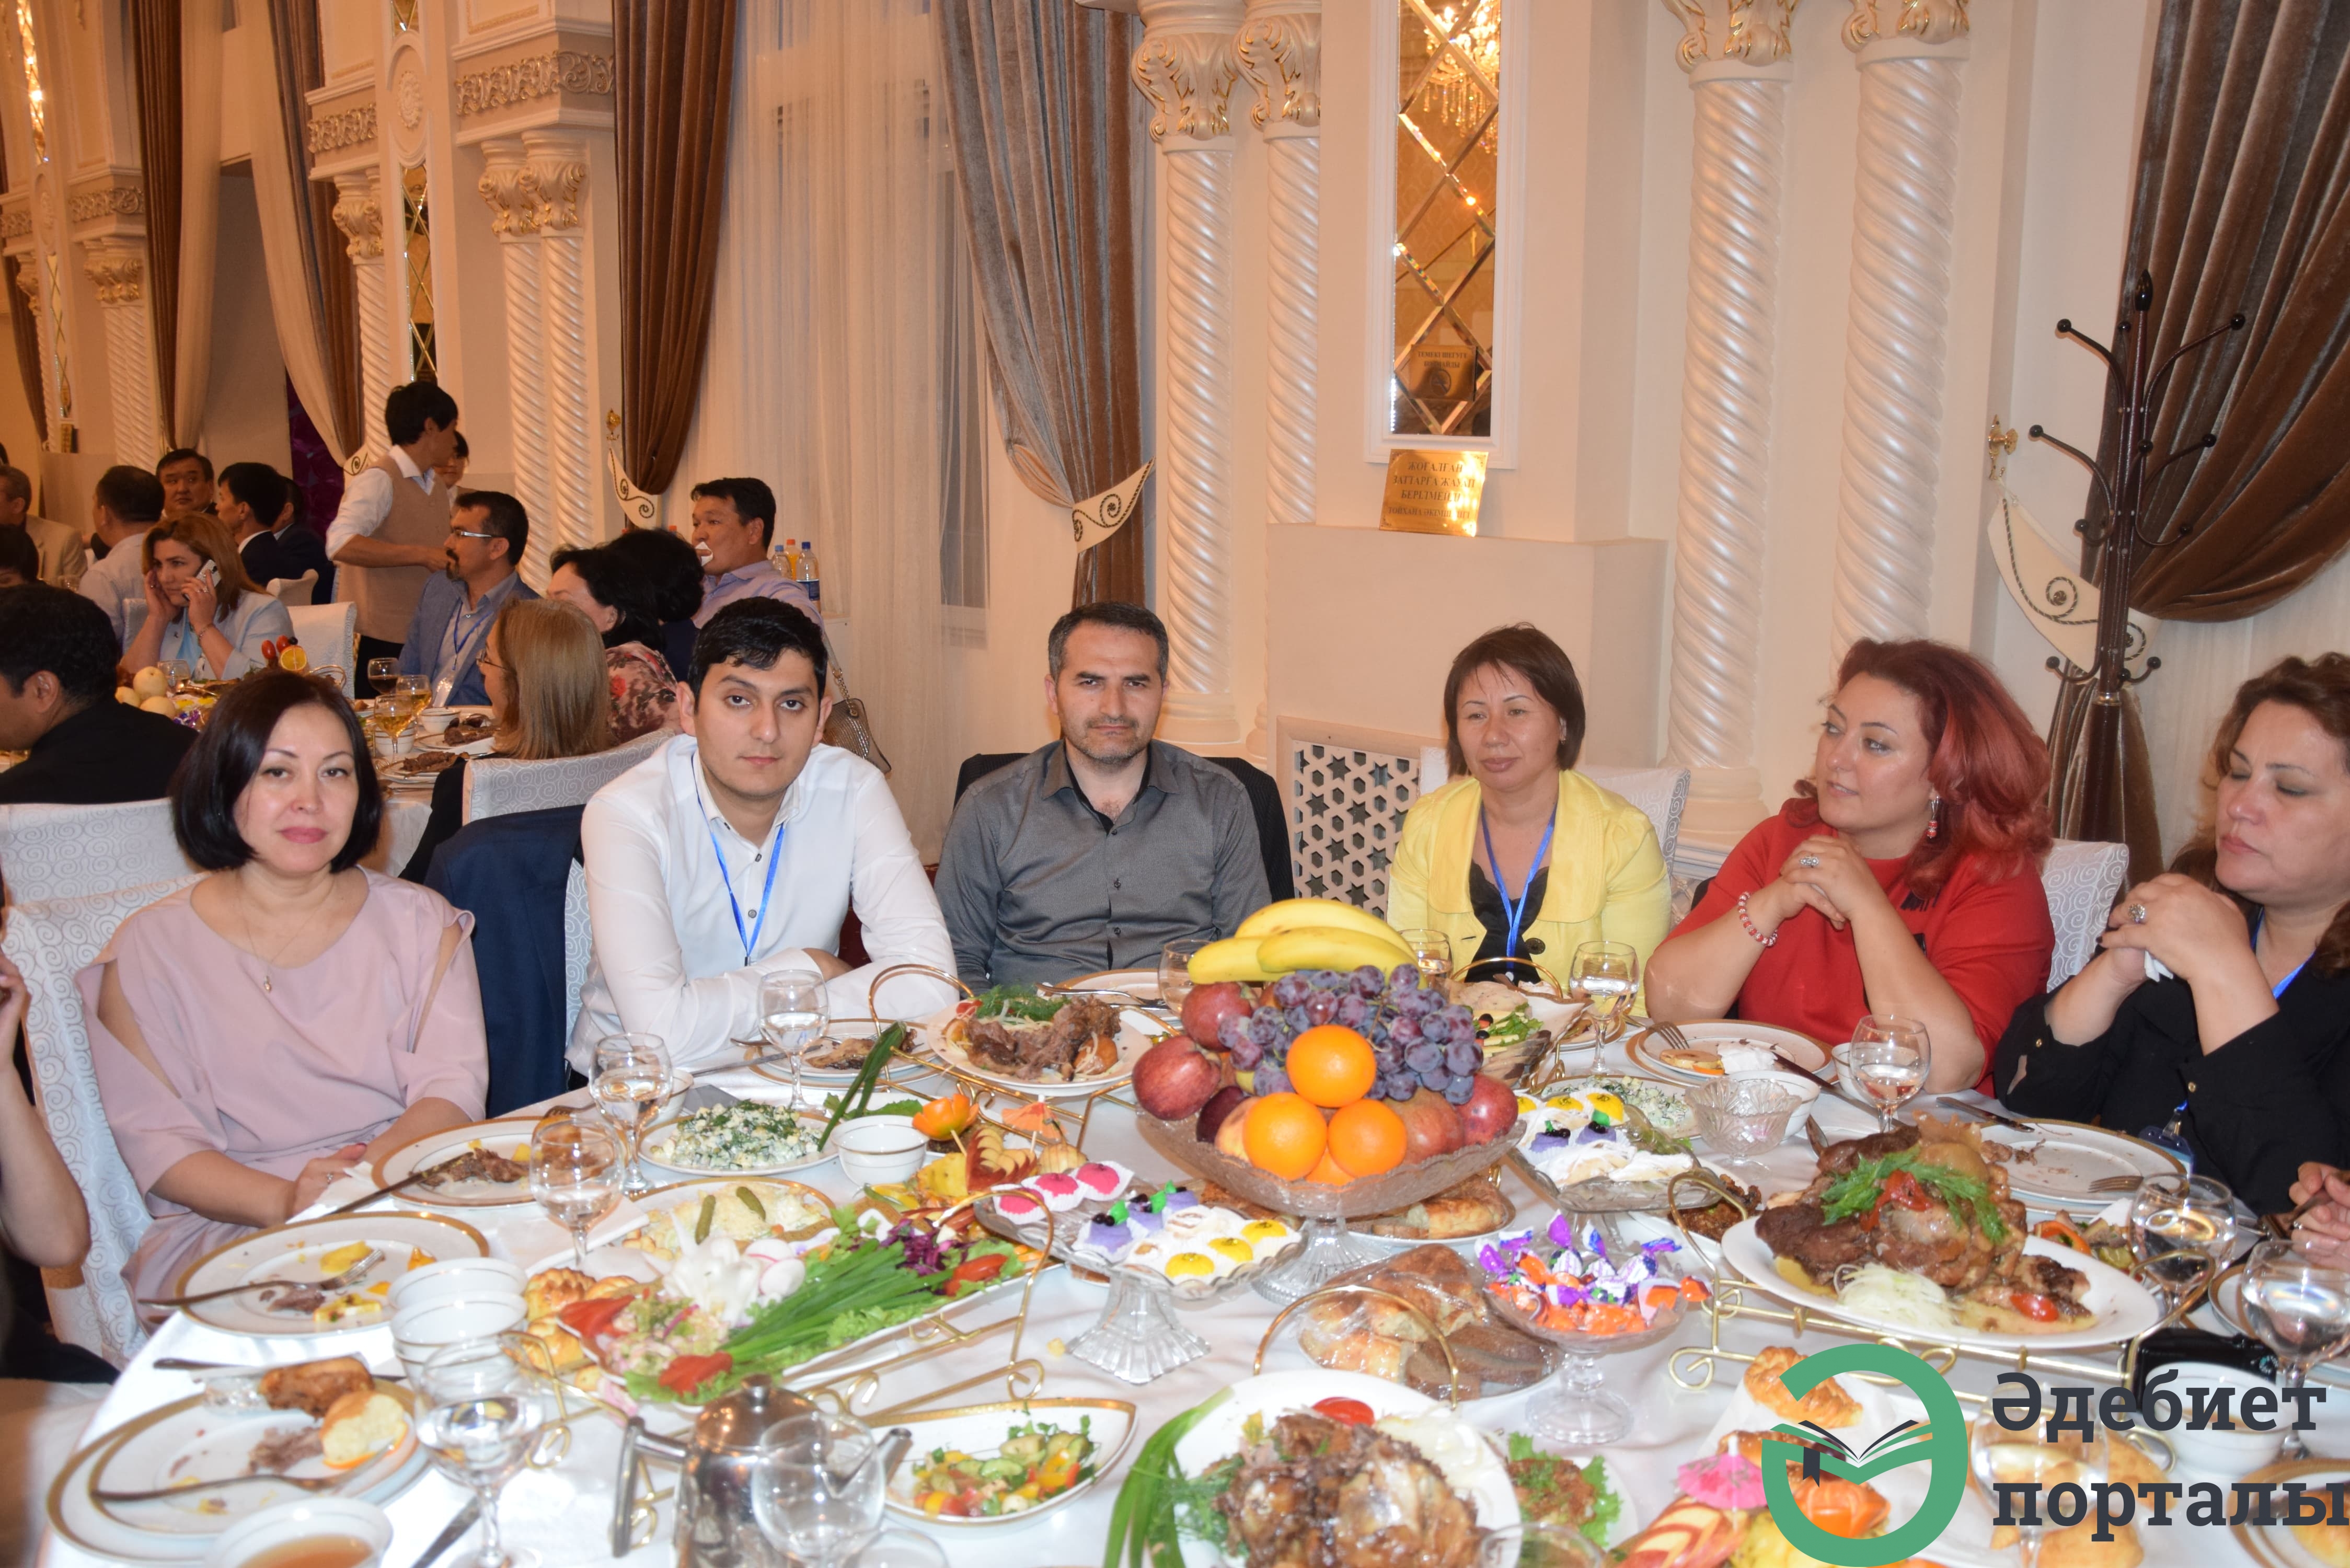 Халықаралық әлеуметтік ғылымдар конгресі: ІІІ Түркістан форумы  - фото 40 - adebiportal.kz